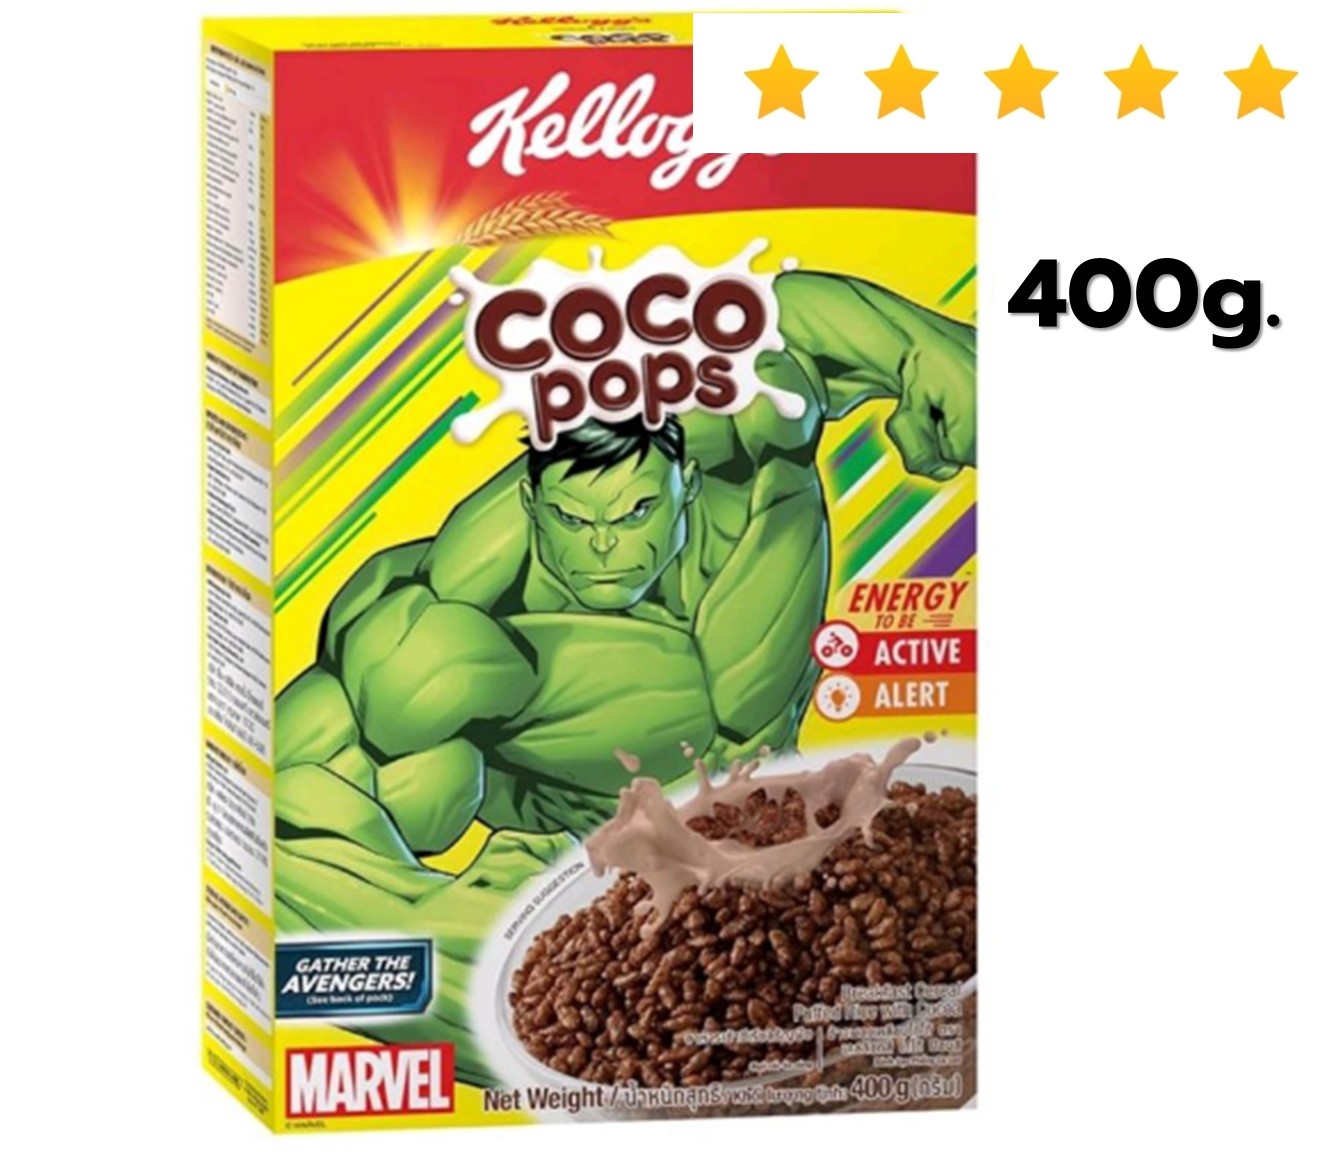 เคลล็อกส์ ซีเรียล โกโก้ ป๊อป KELLOGG'S CEREAL COCO POPS 400G. อาหารเช้า ซีเรียล